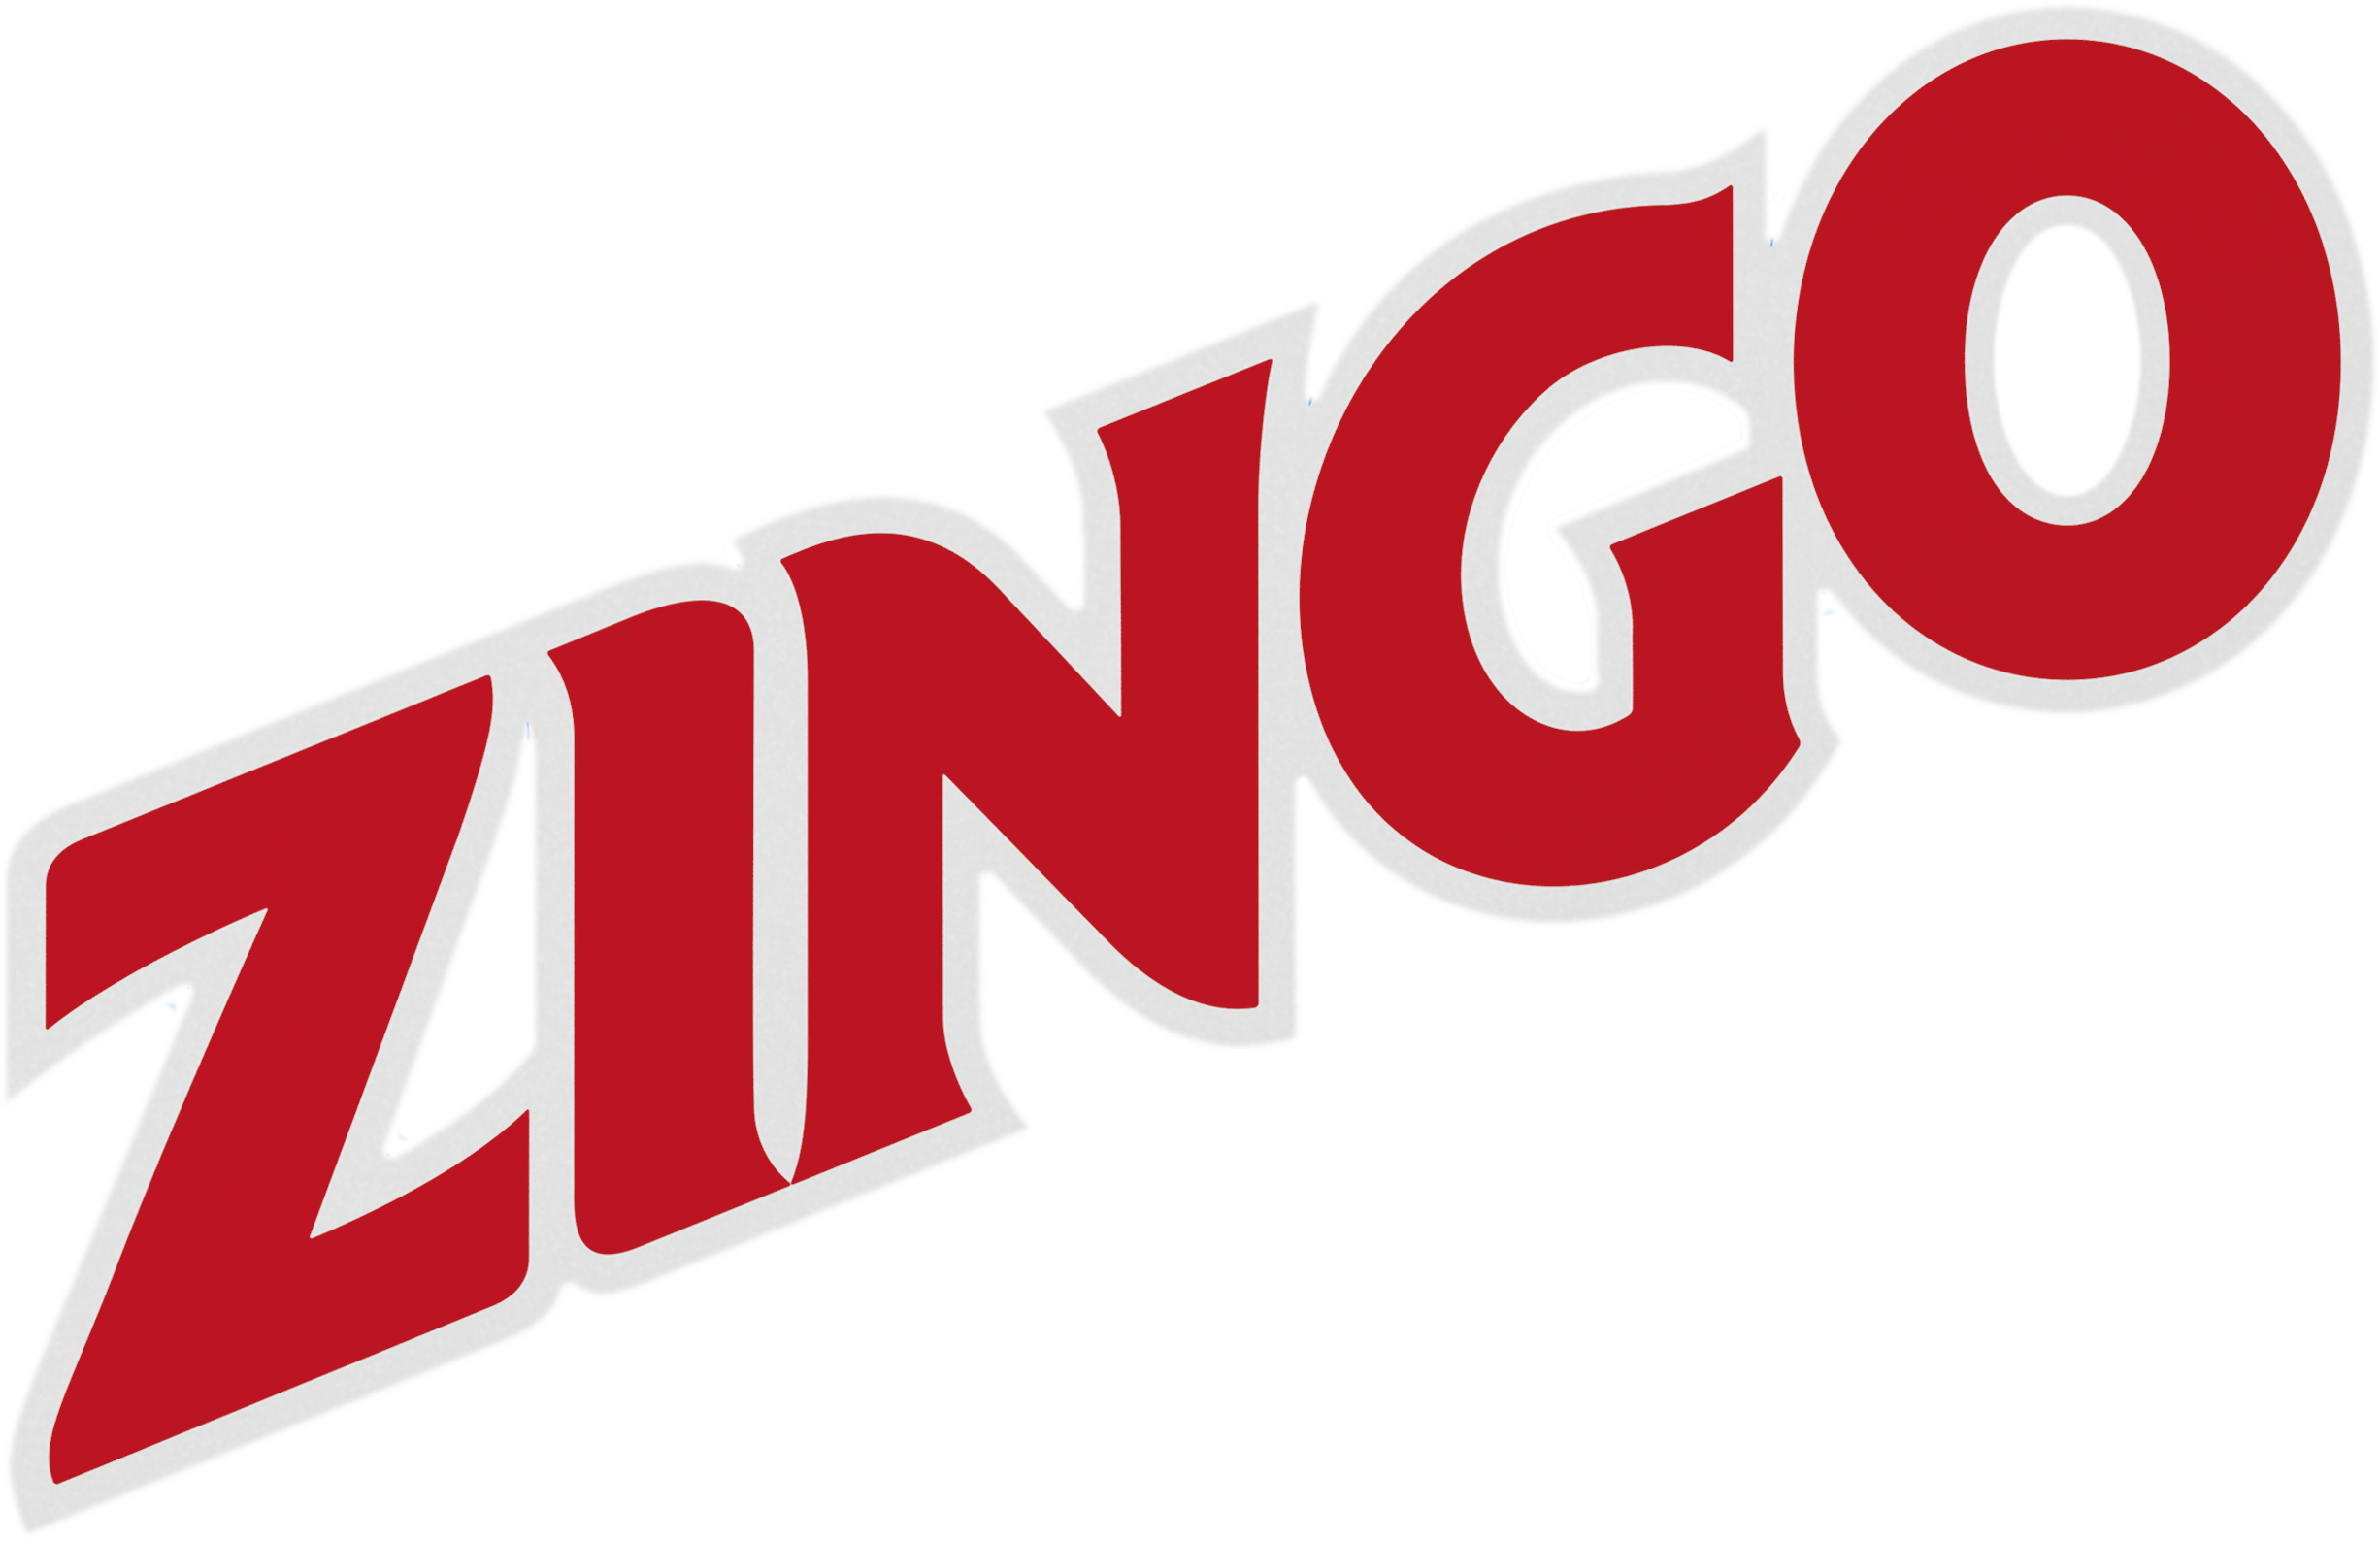 zingo label